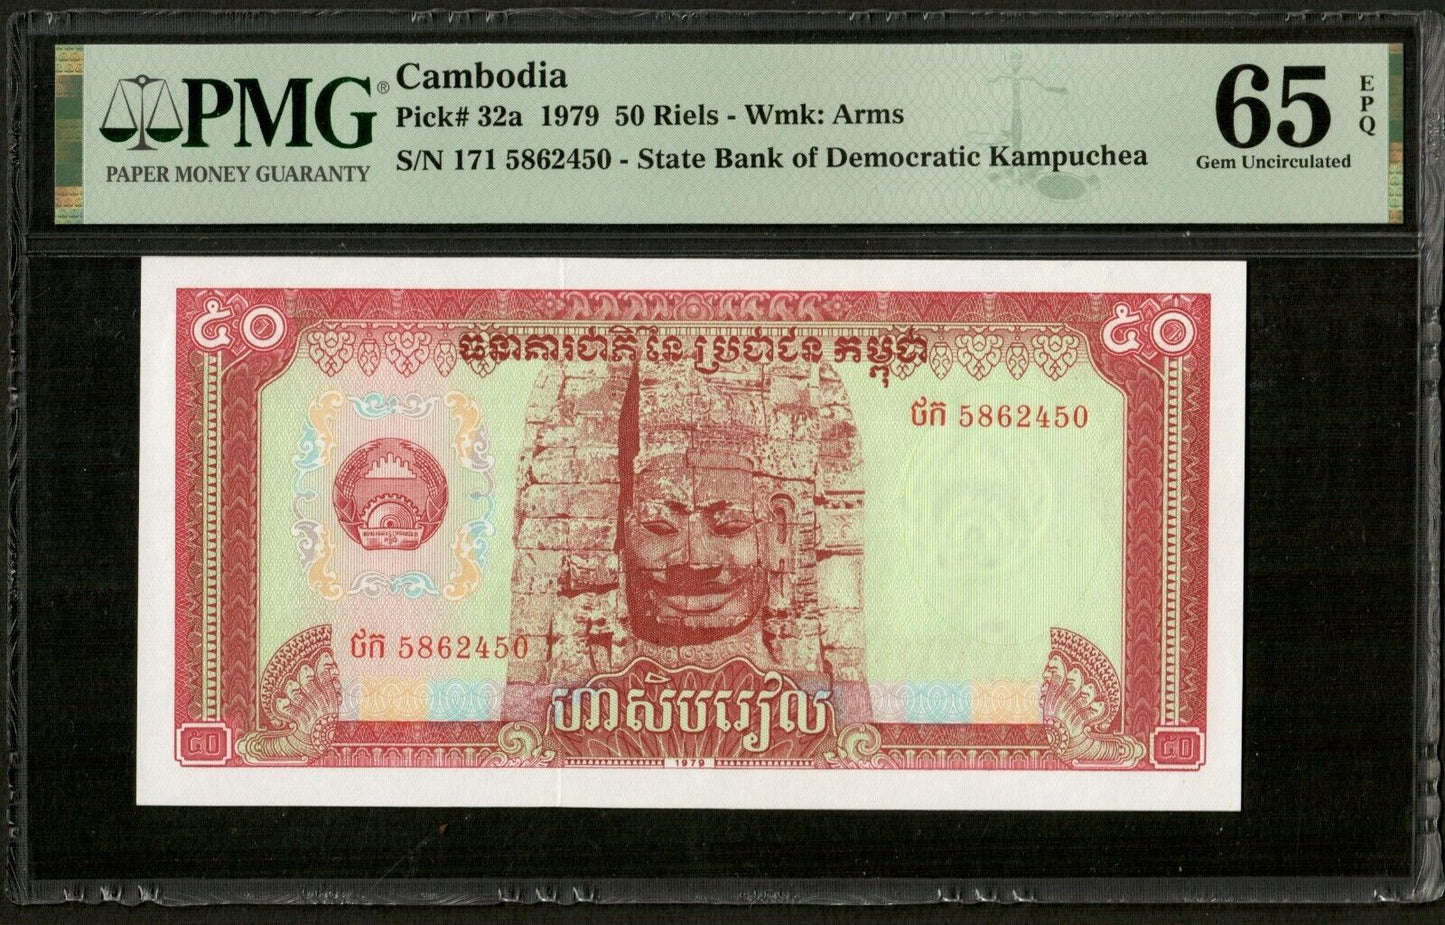 CAMBODIA, Kampuchea - 50 Riels 1979 P.32a NEUF / PMG Gem Unc 65 EPQ